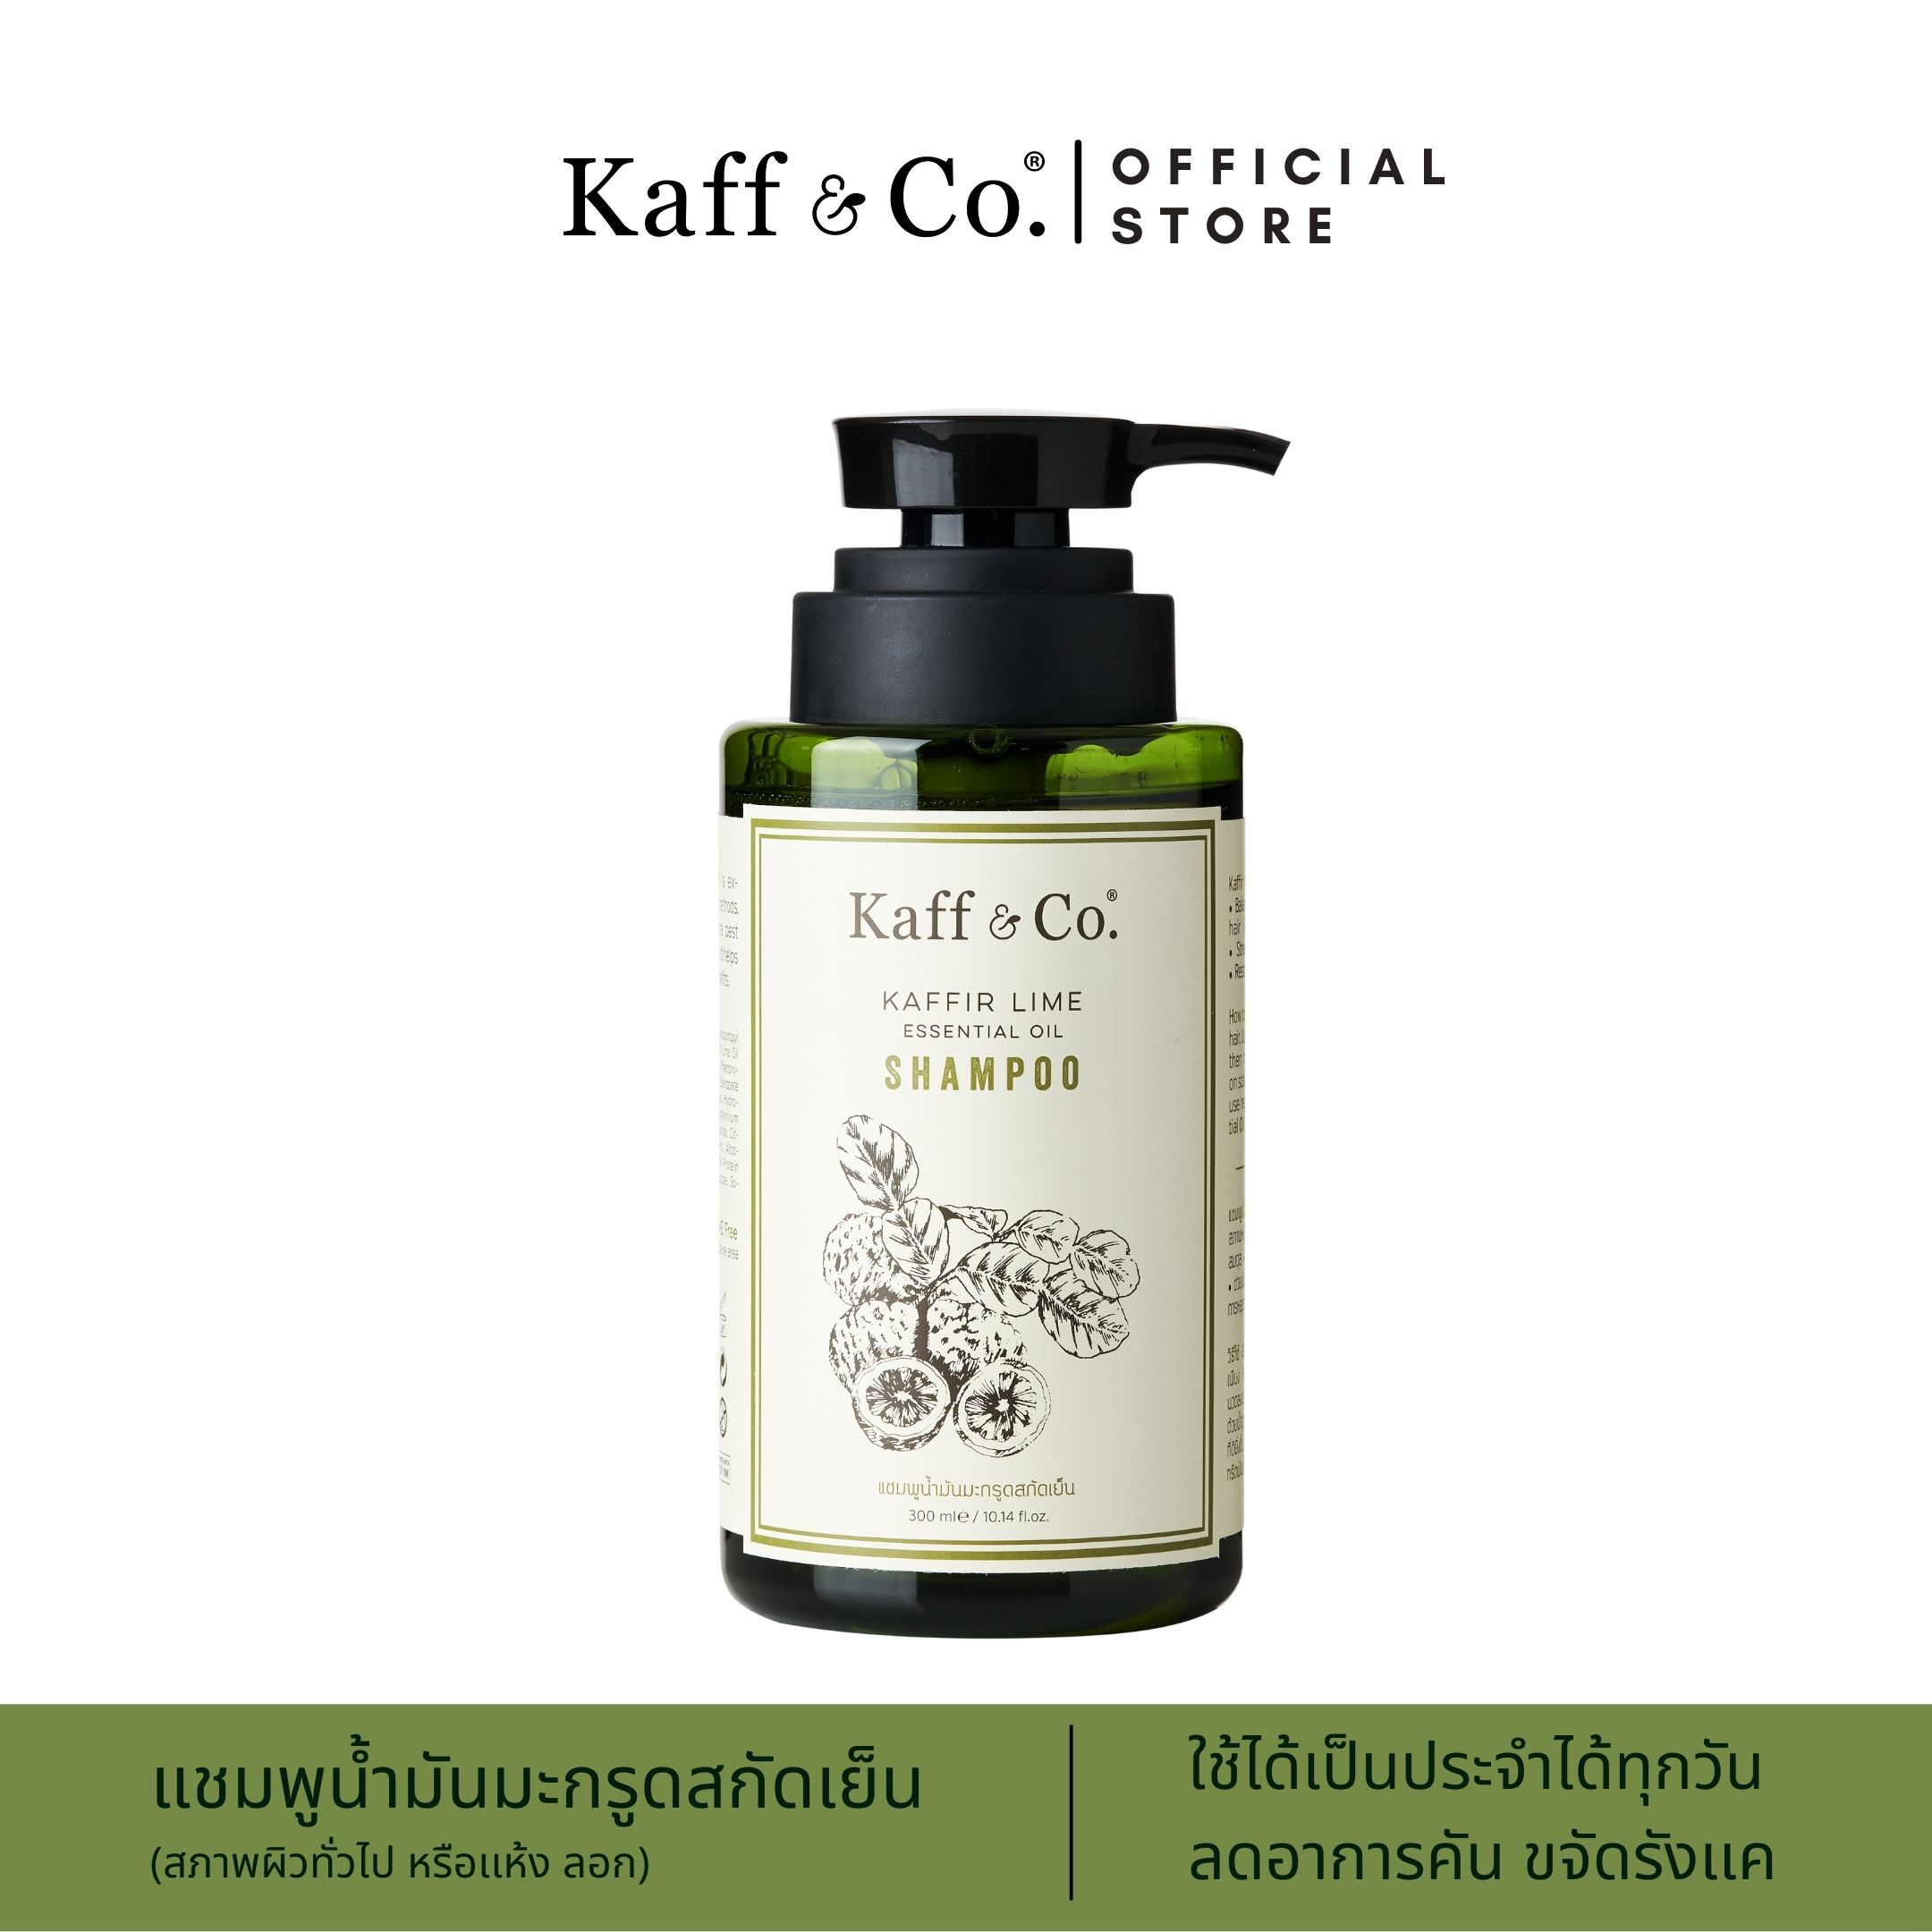 โปรโมชั่น Kaff & Co. Kaffir Lime Essential Oil Shampoo 300ml แชมพูน้ำมันมะกรูดสกัดเย็น สำหรับหนังศีรษะแห้ง คัน มีรังแค สระผมทุกวัน